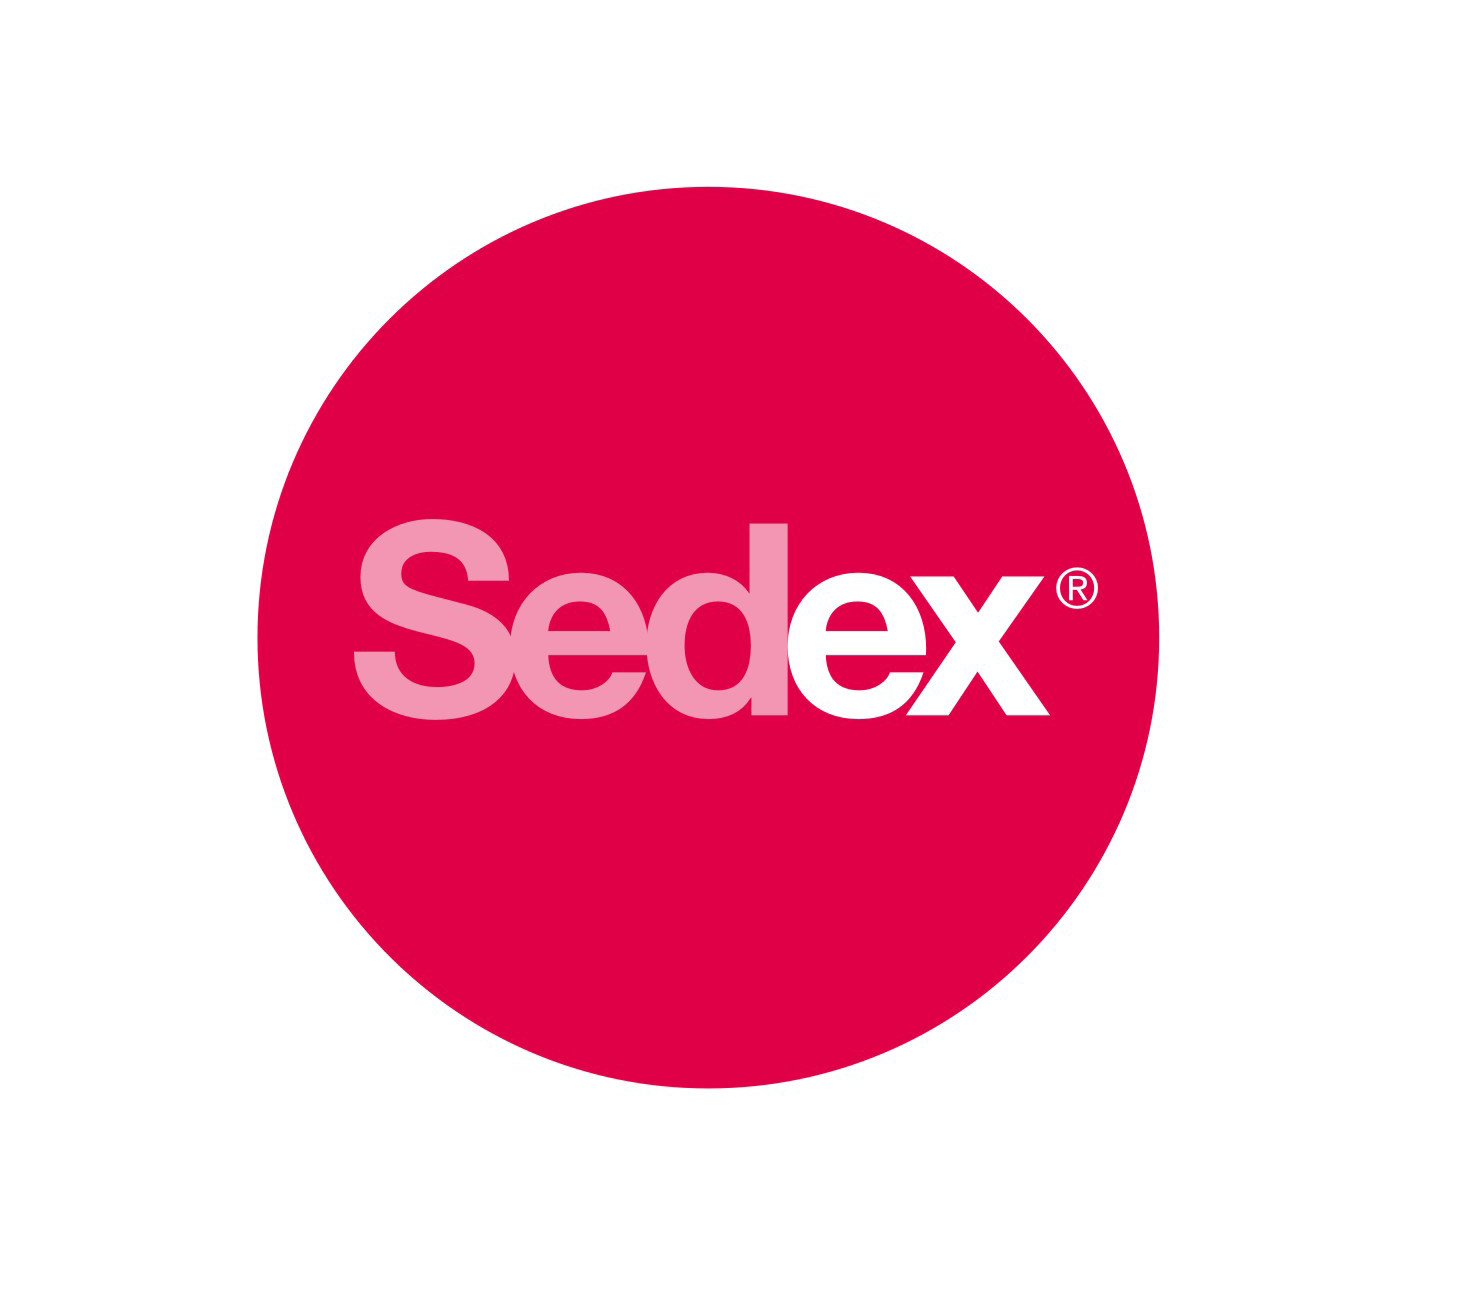 www.sedex.com